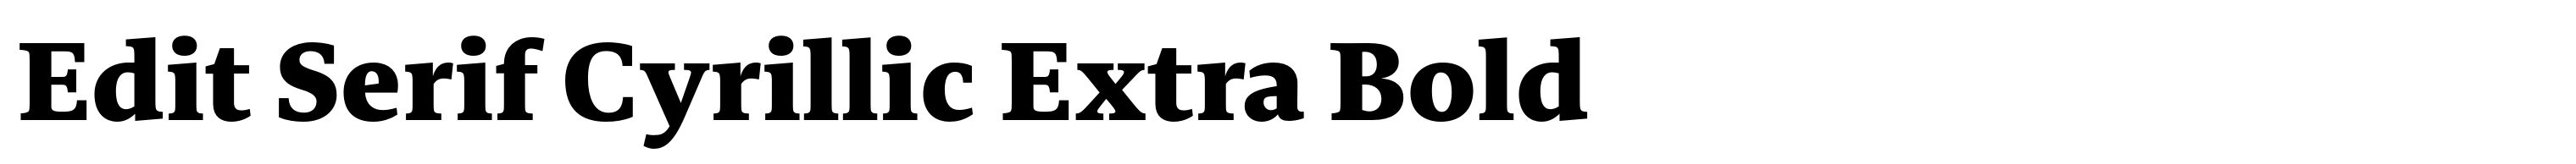 Edit Serif Cyrillic Extra Bold